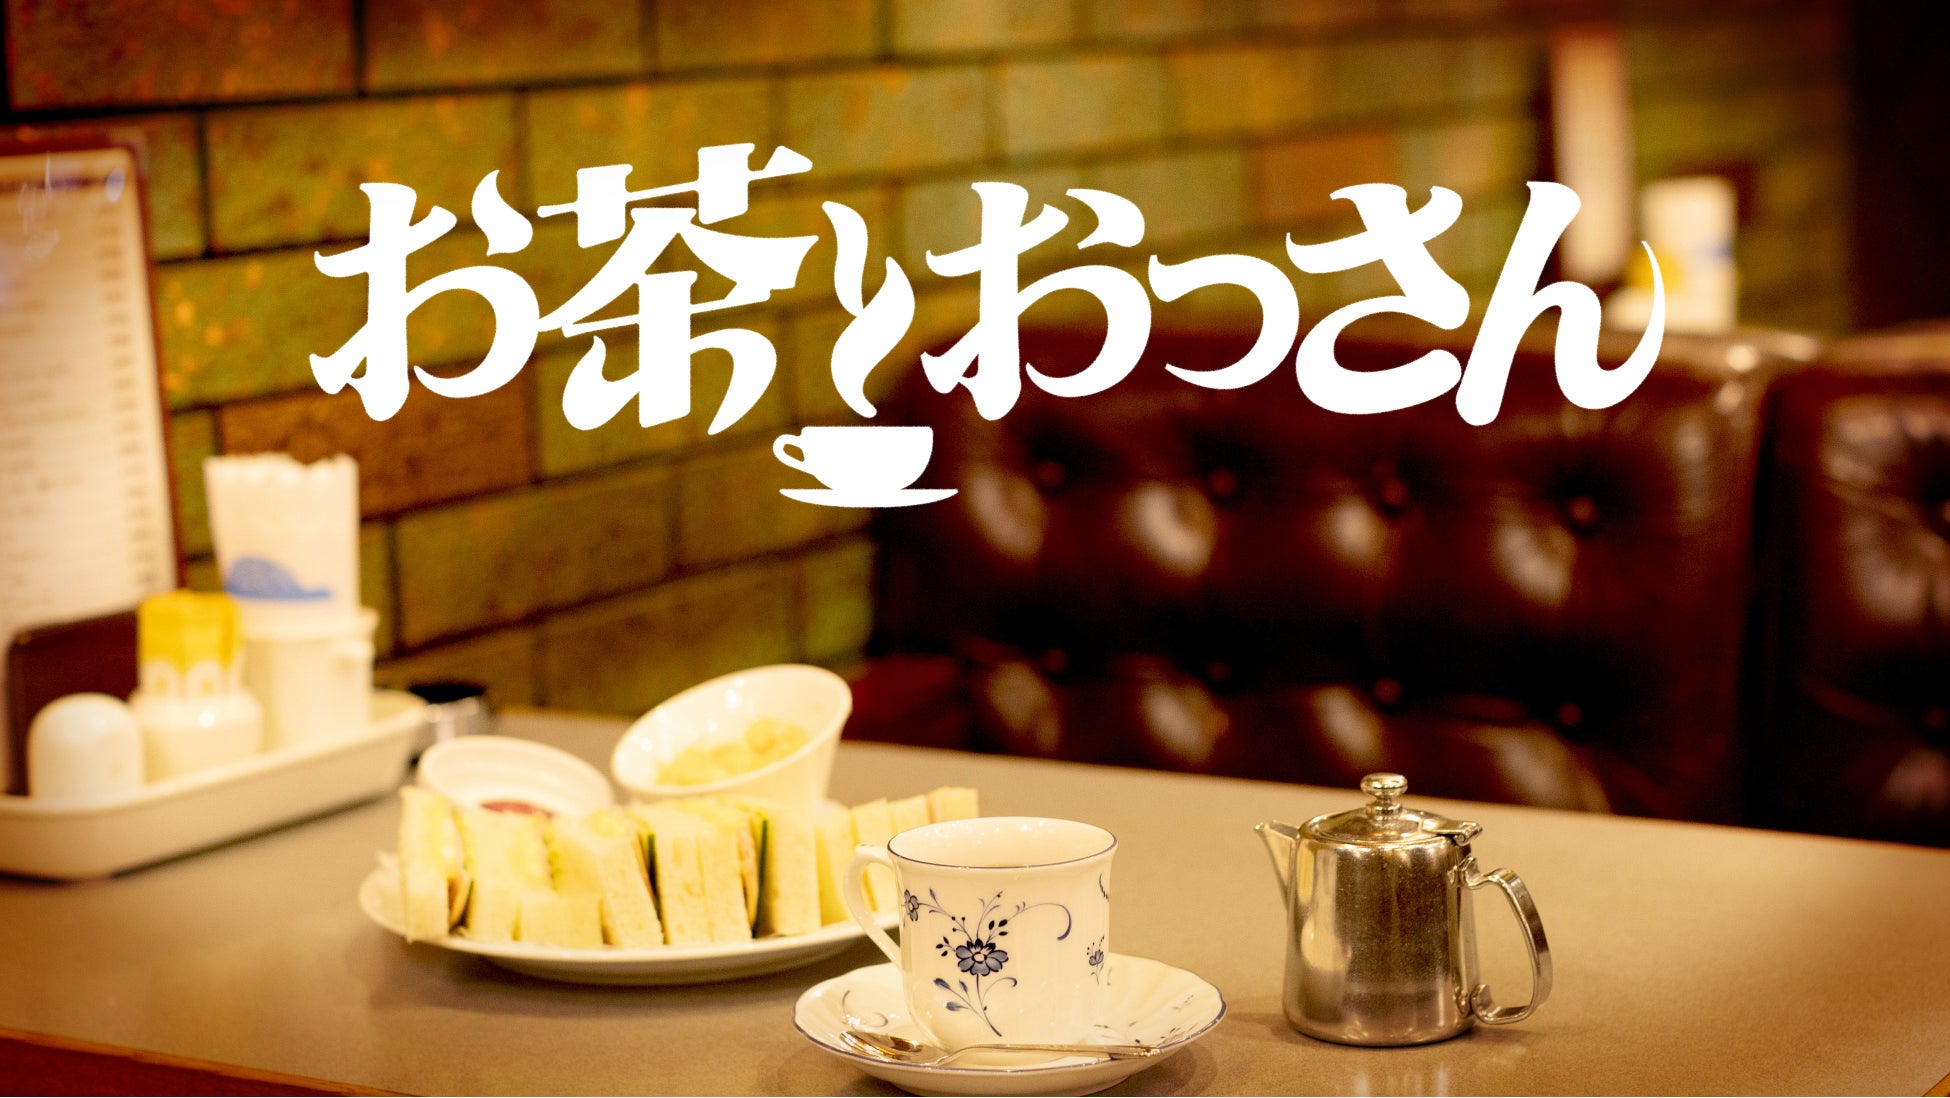 松本人志、知らんおっさんの“成功話”を聞く「お茶とおっさん」のサブ画像5